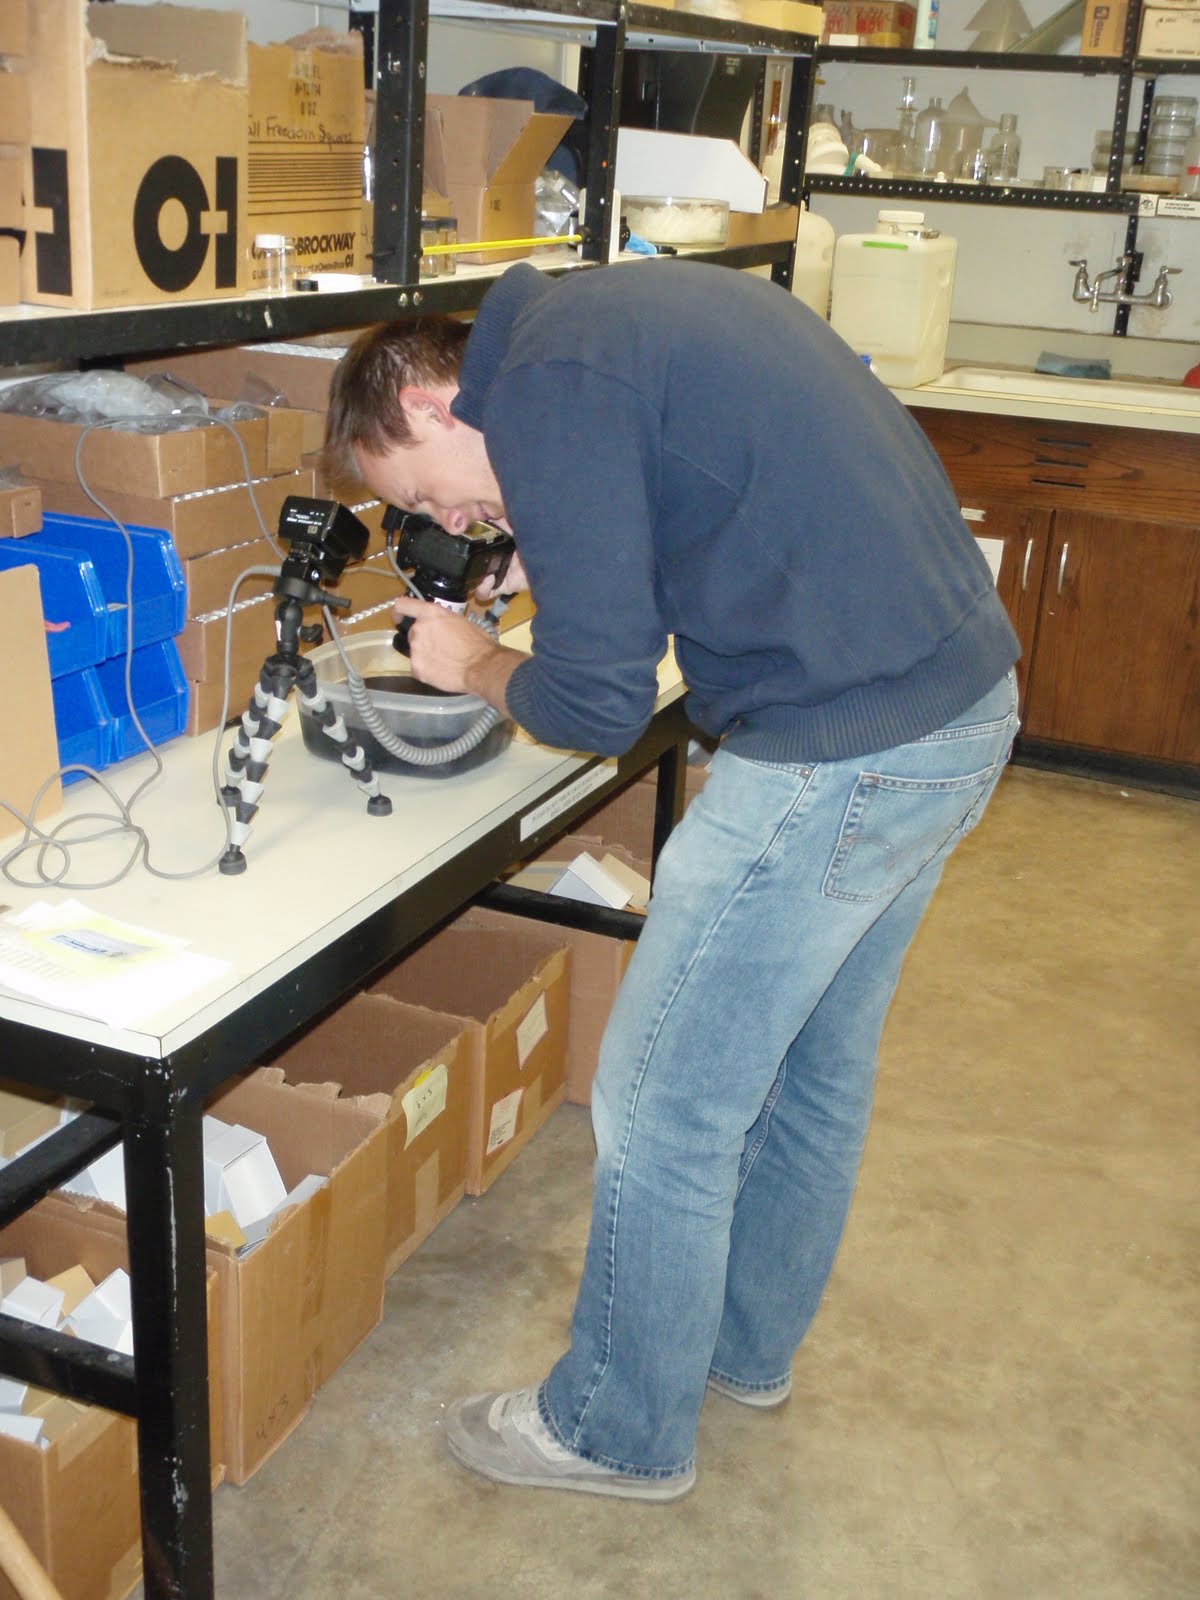 Derek taking specimen photos in the lab